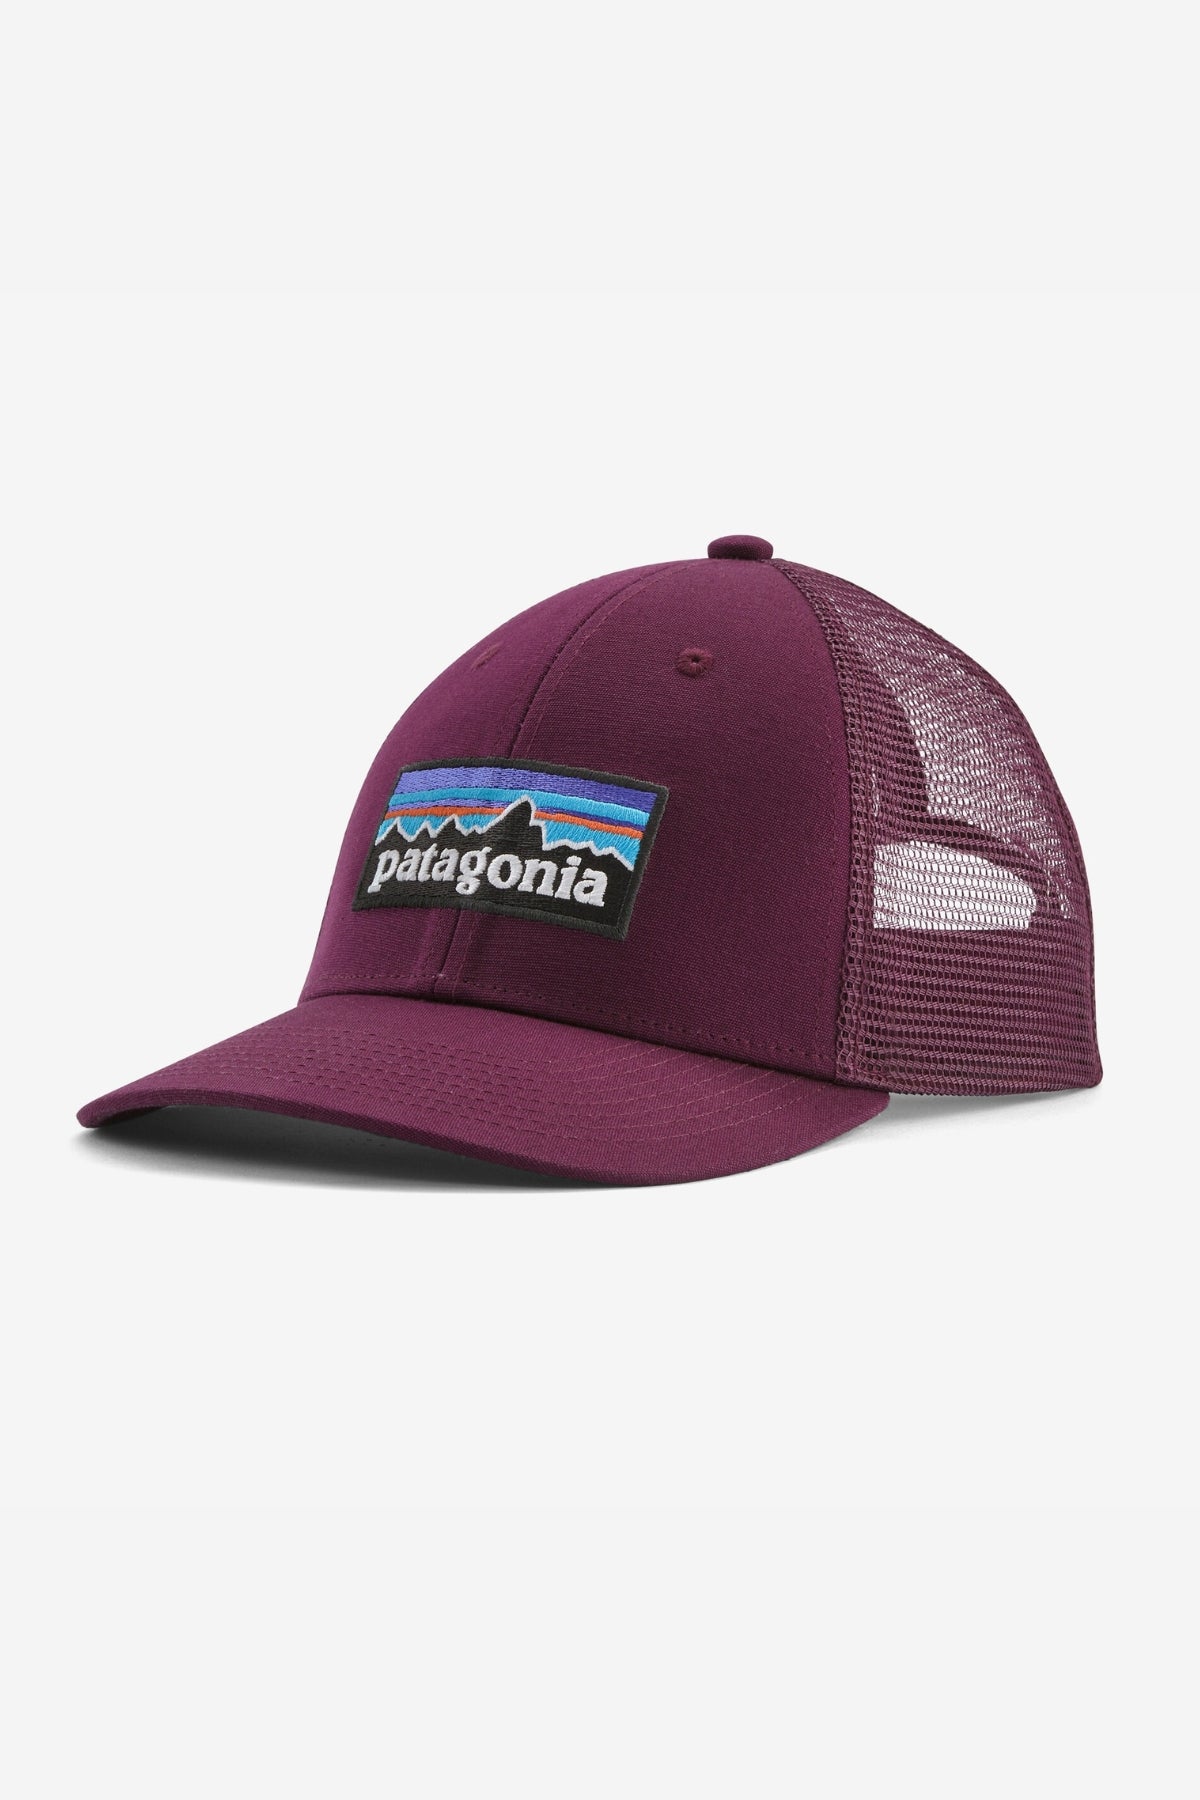 P-6 Logo LoPro Trucker Hat - Patagonia